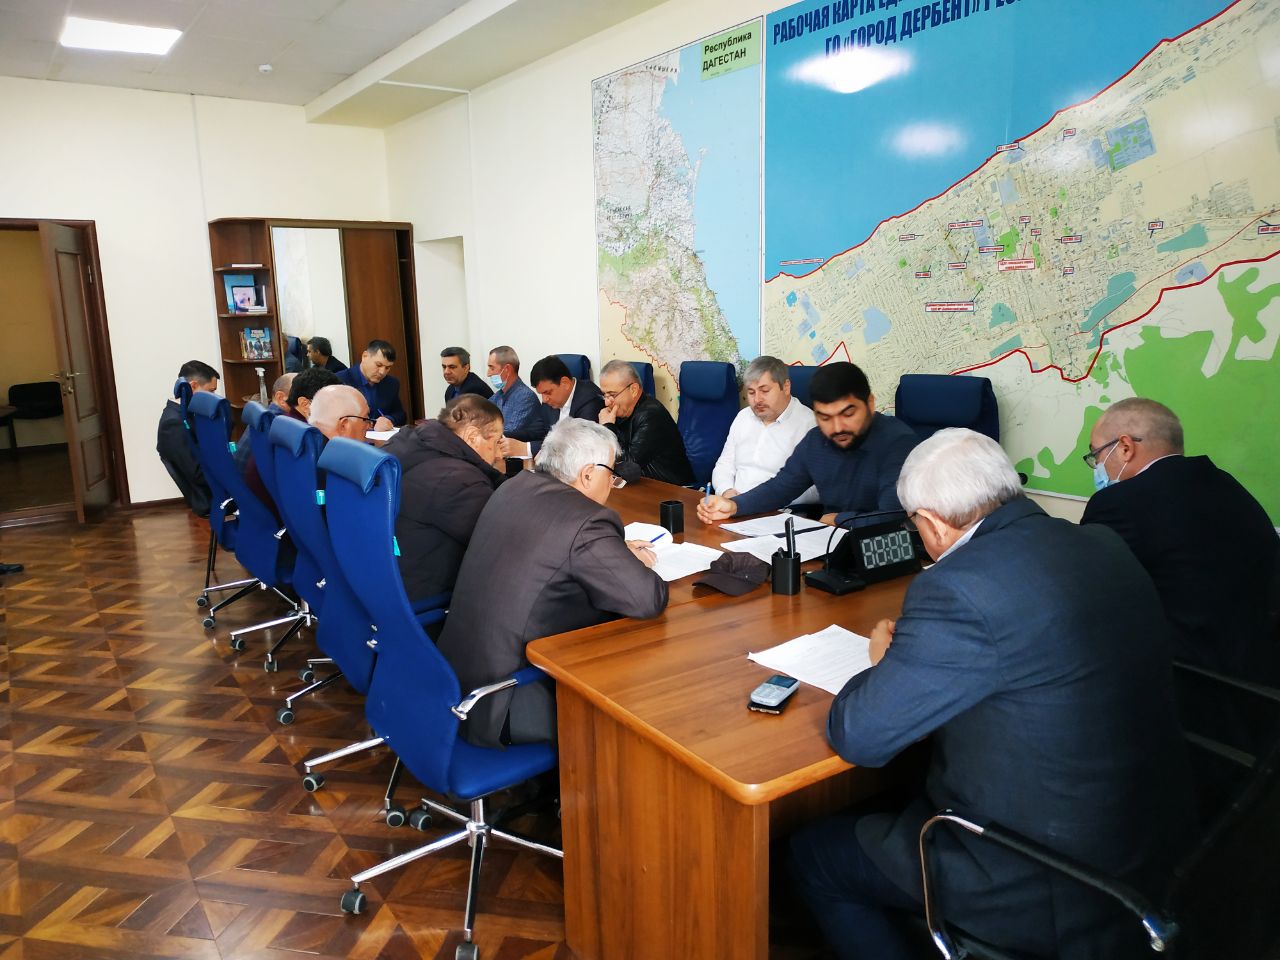 Заседание комиссии по ПУФ городского округа "город Дербент"